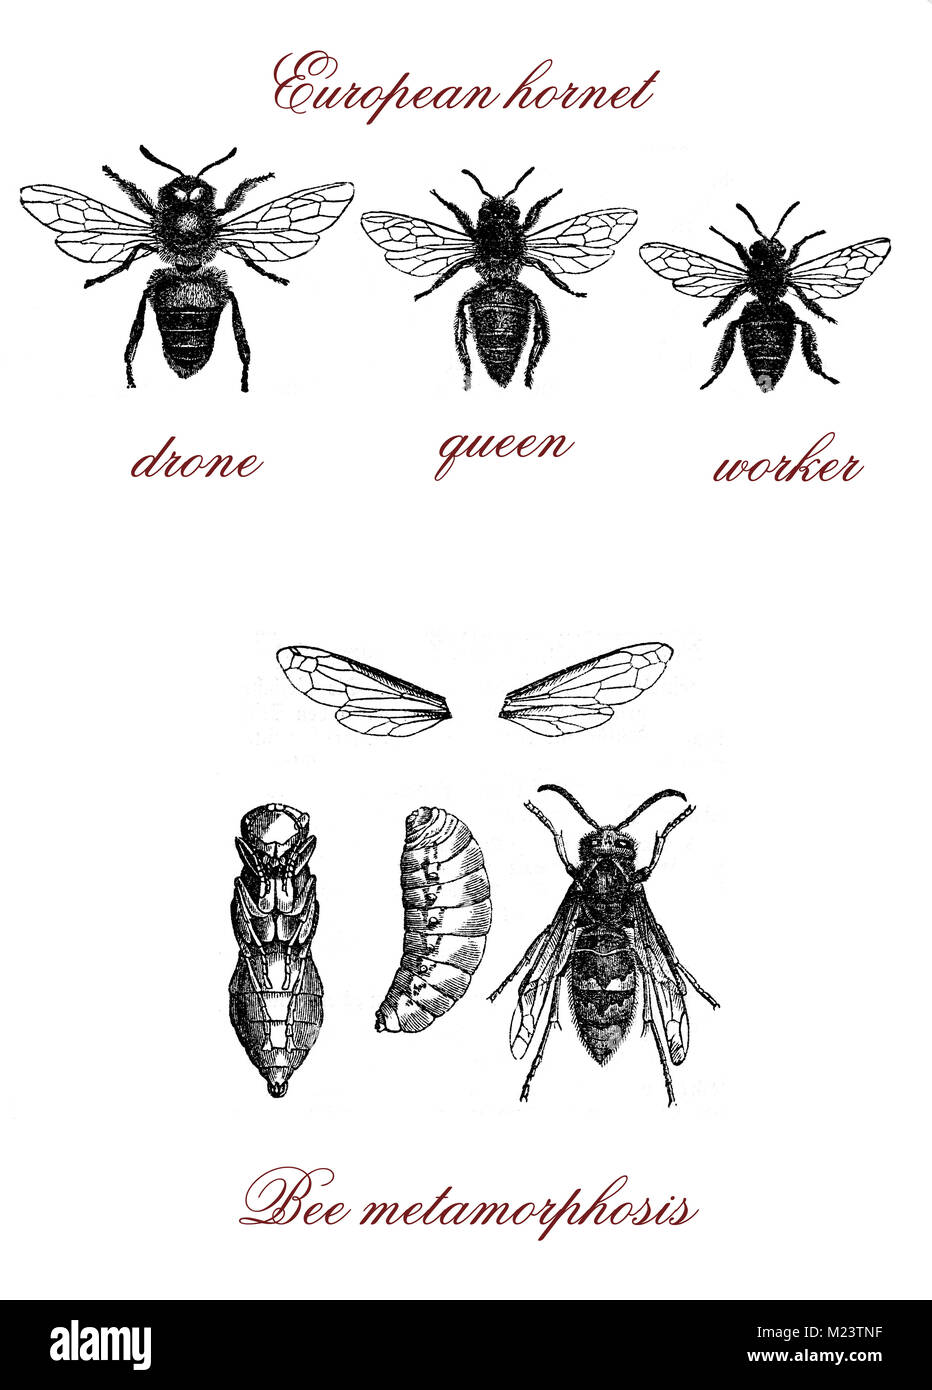 Bee, European hornet and bee metamorphosis, vintage engraving Stock Photo